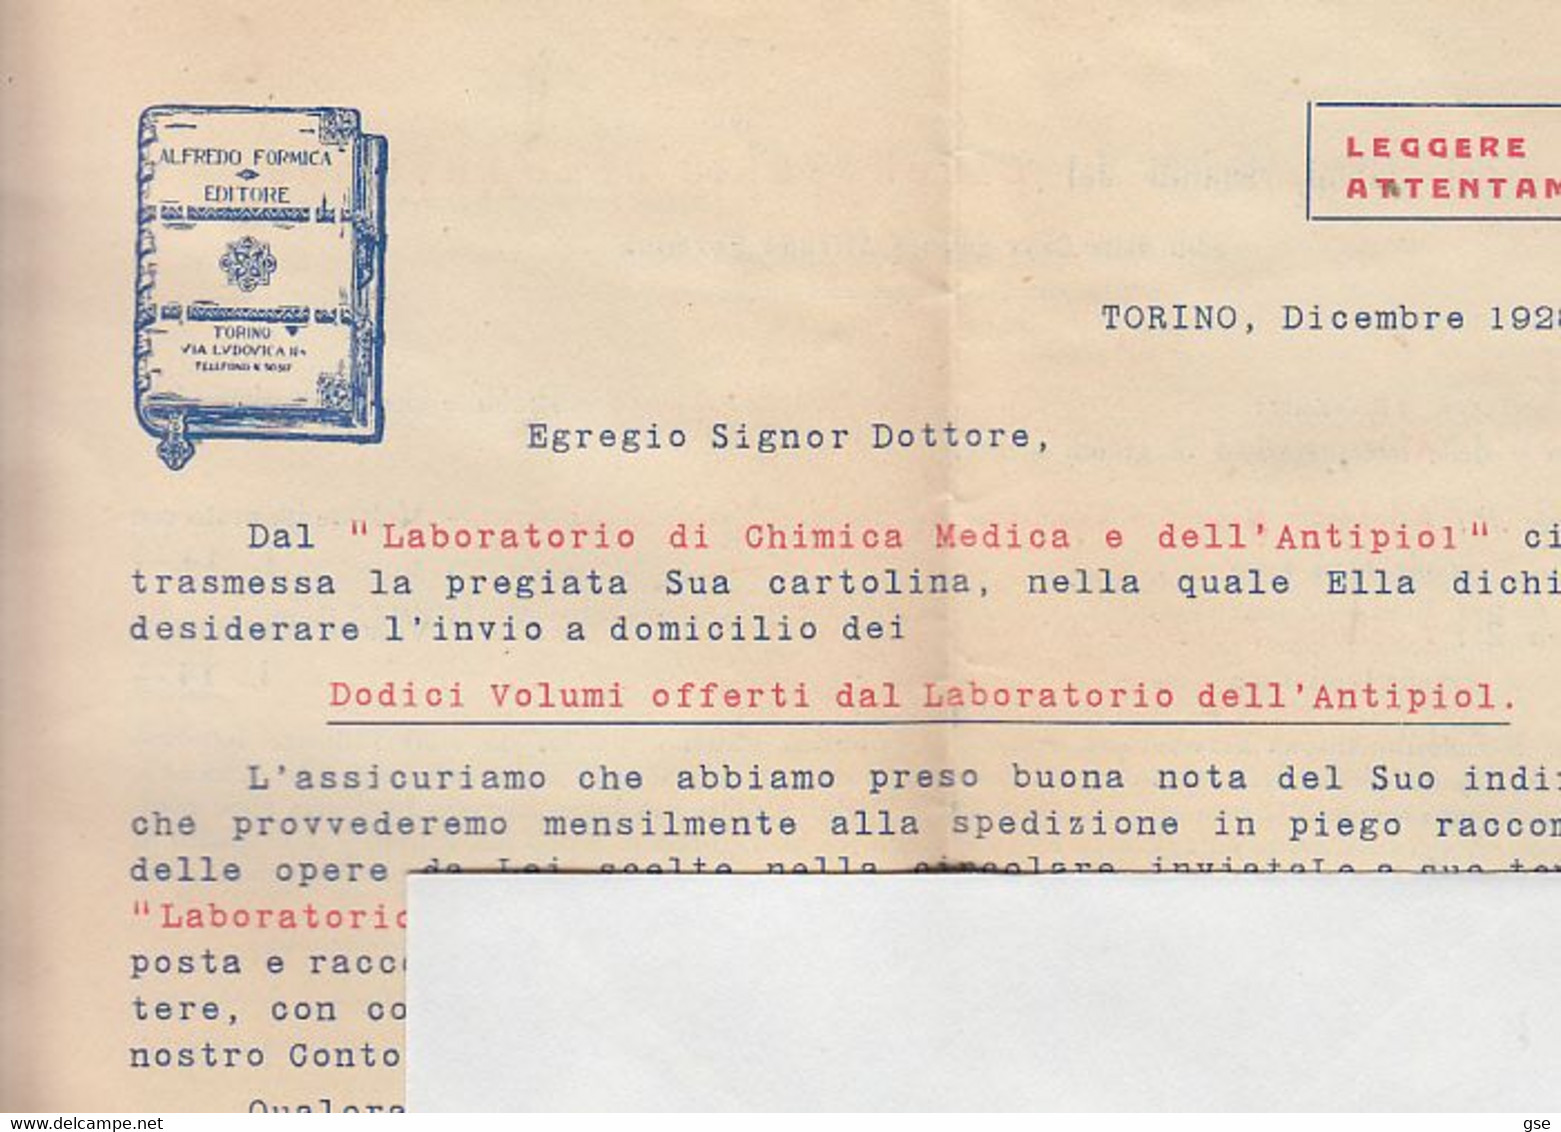 ITALIA 1929 - Casa Editrice "ALFREDO FORMICA - Torino"" - Lettera Per Aquila-.- - Society, Politics & Economy